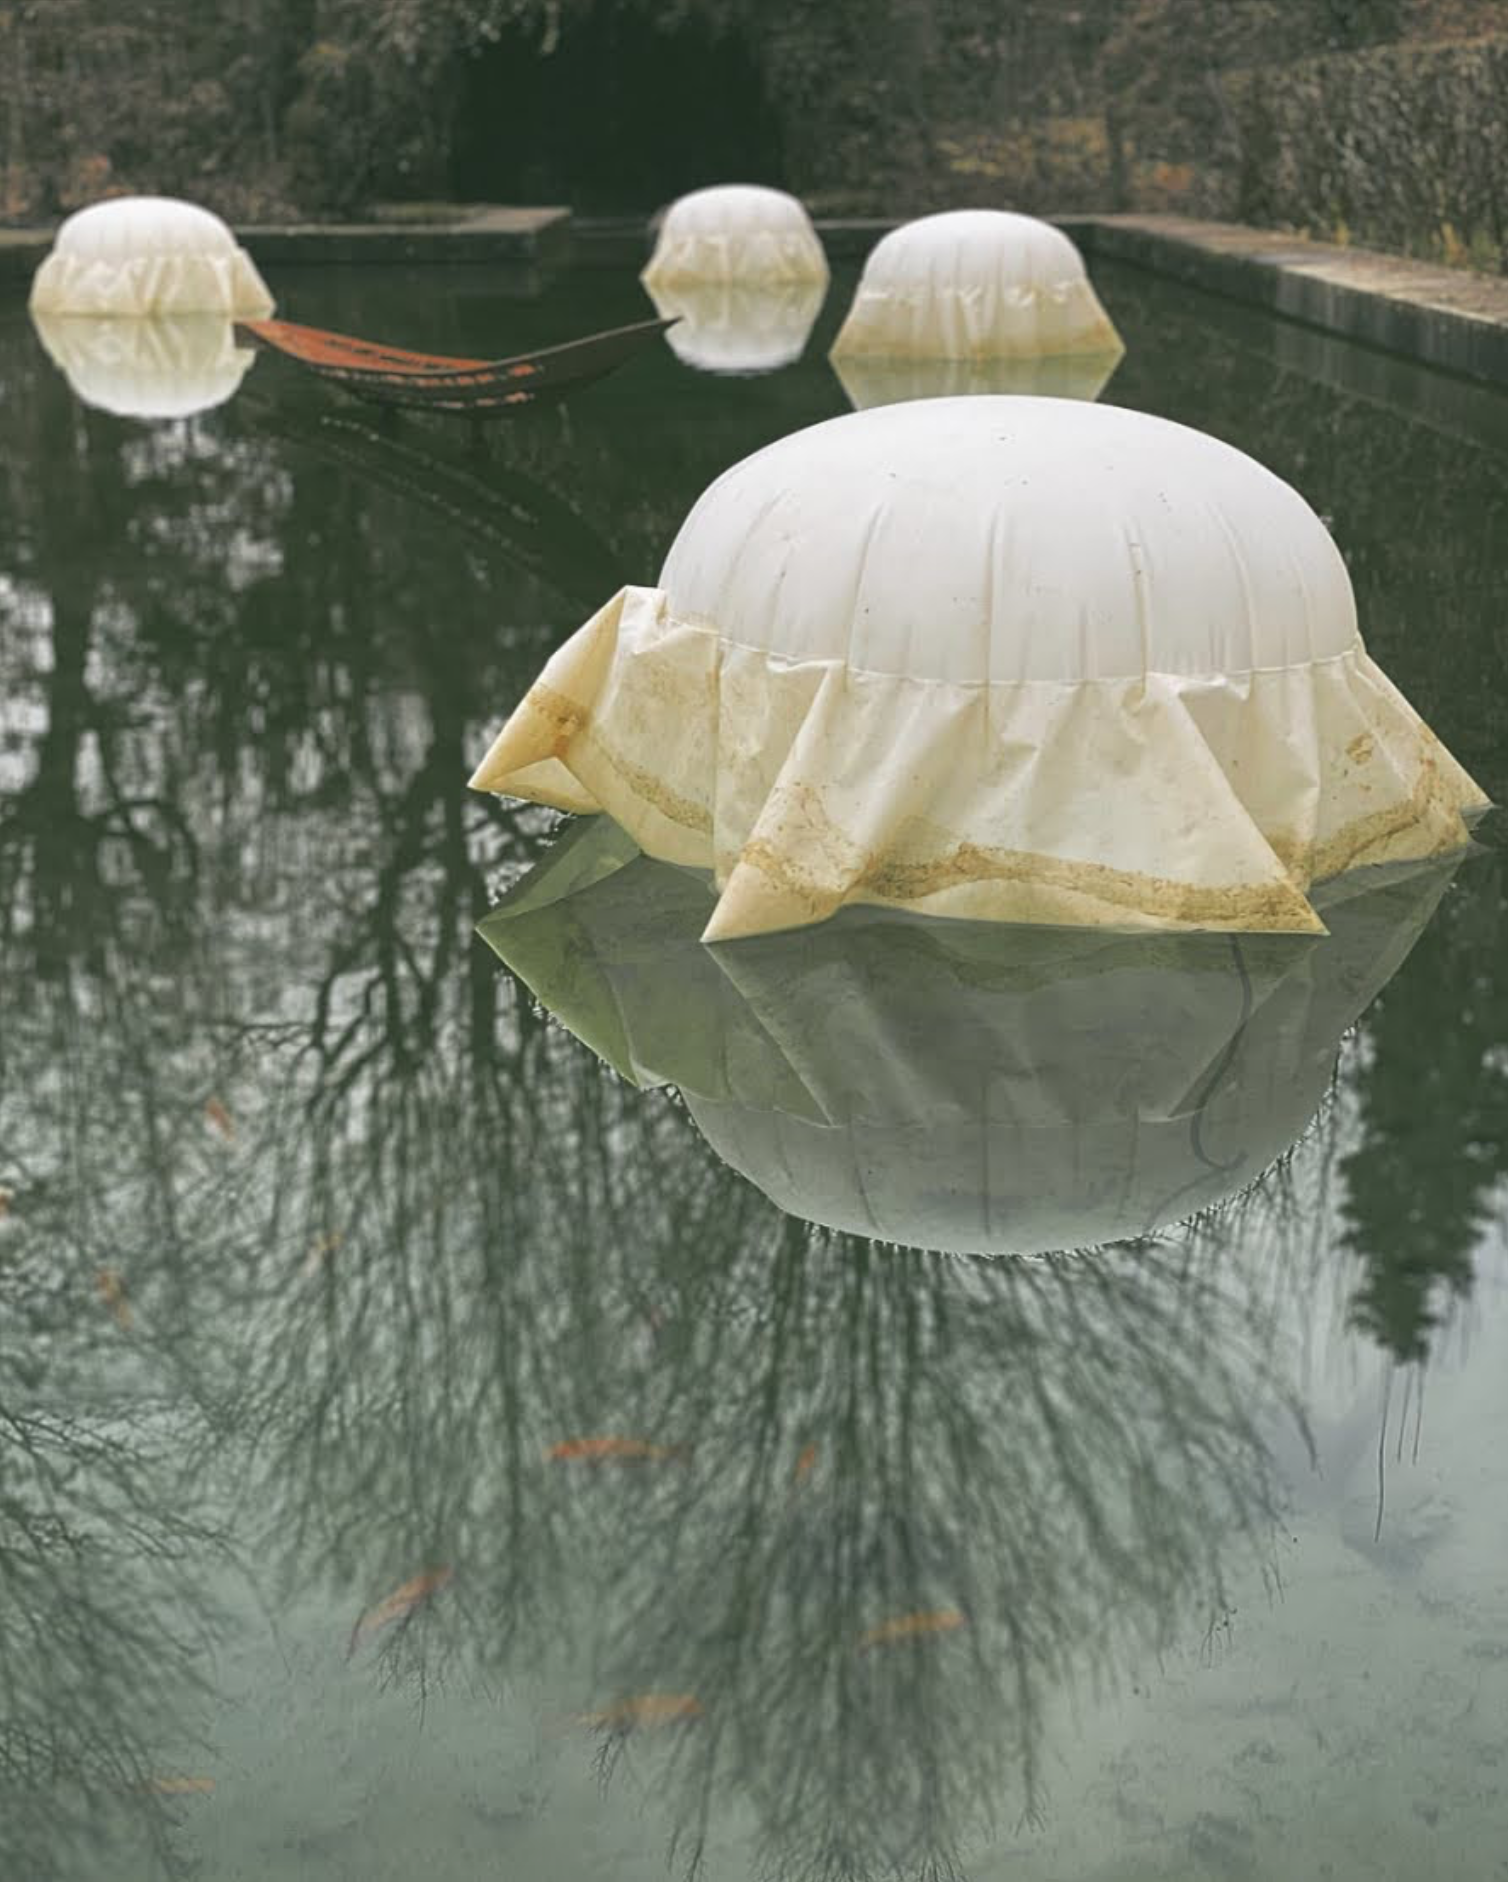 Campagne photographique autour de l'installation "Lumières au jardin" au musée Hébert du 22 janvier au 13 mars 2022 - Une proposition artistique de la compagnie "Porté par le vent"